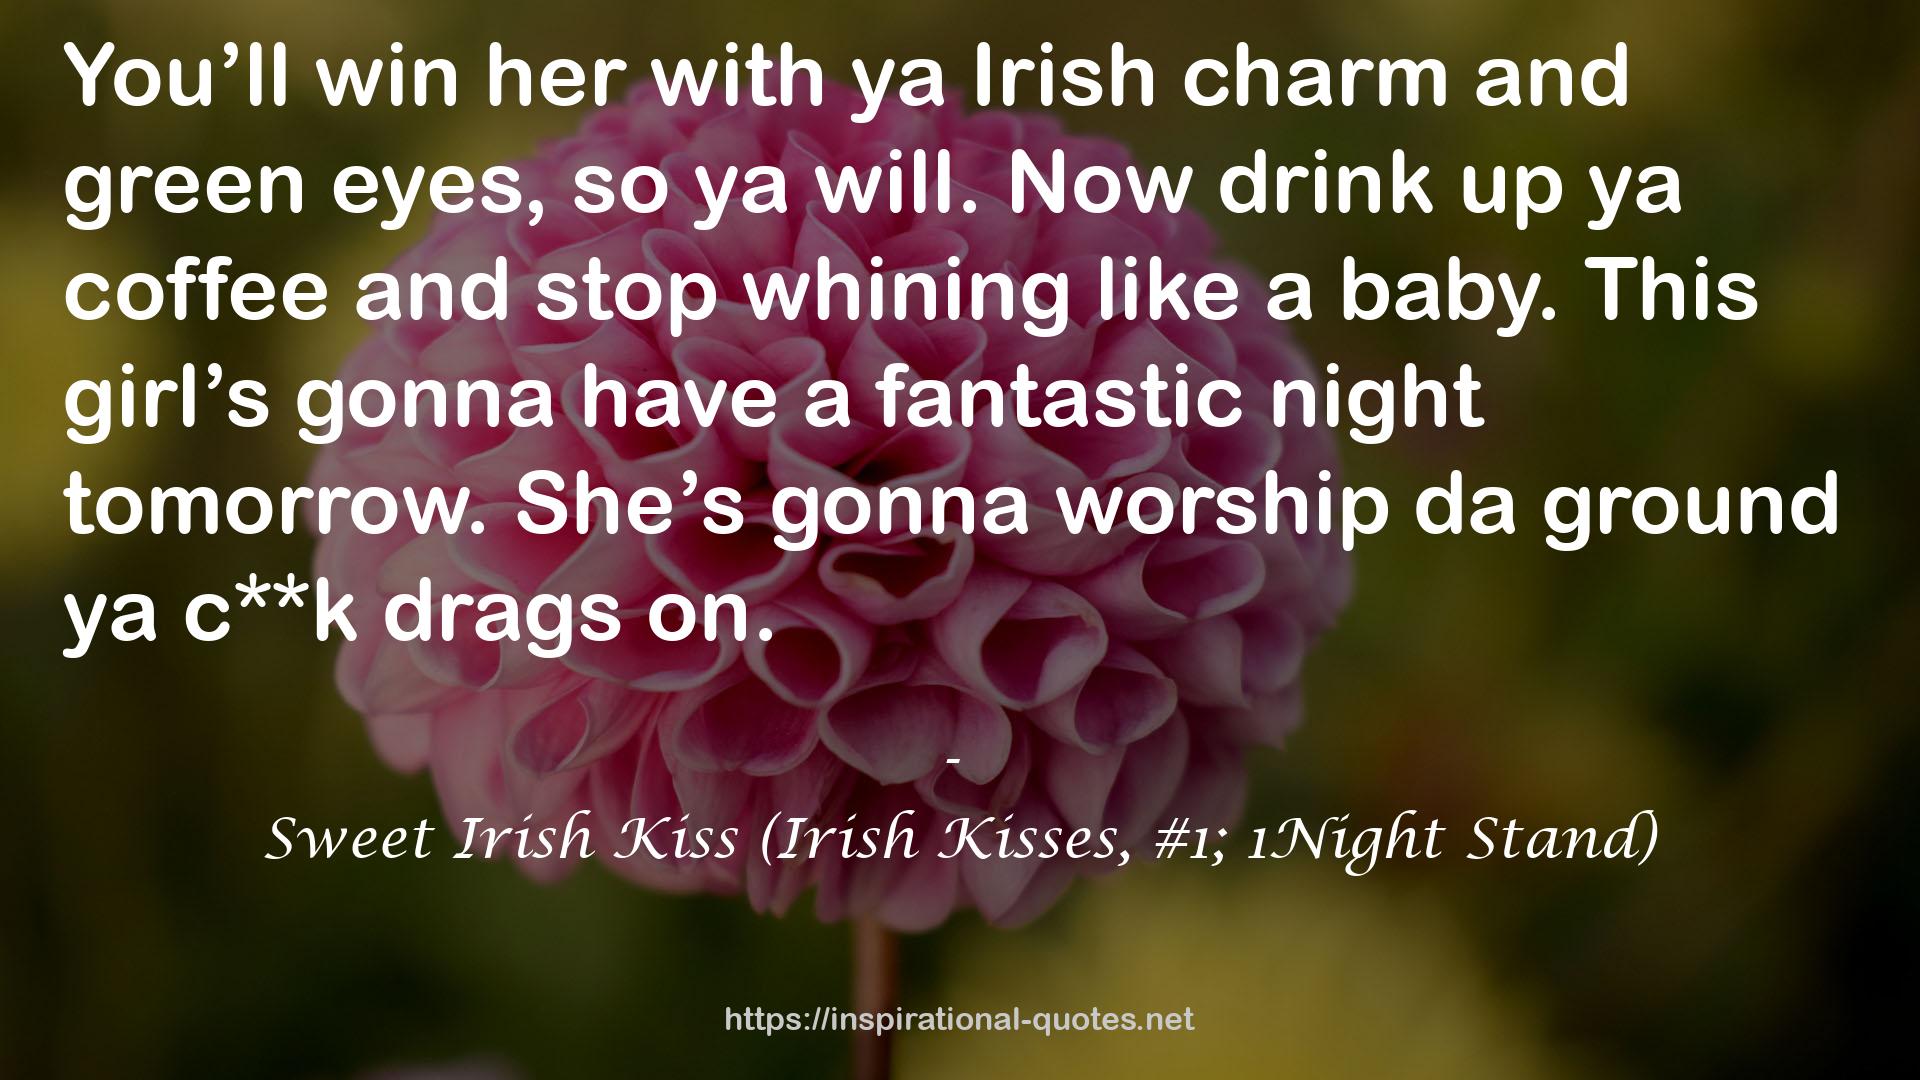 Sweet Irish Kiss (Irish Kisses, #1; 1Night Stand) QUOTES